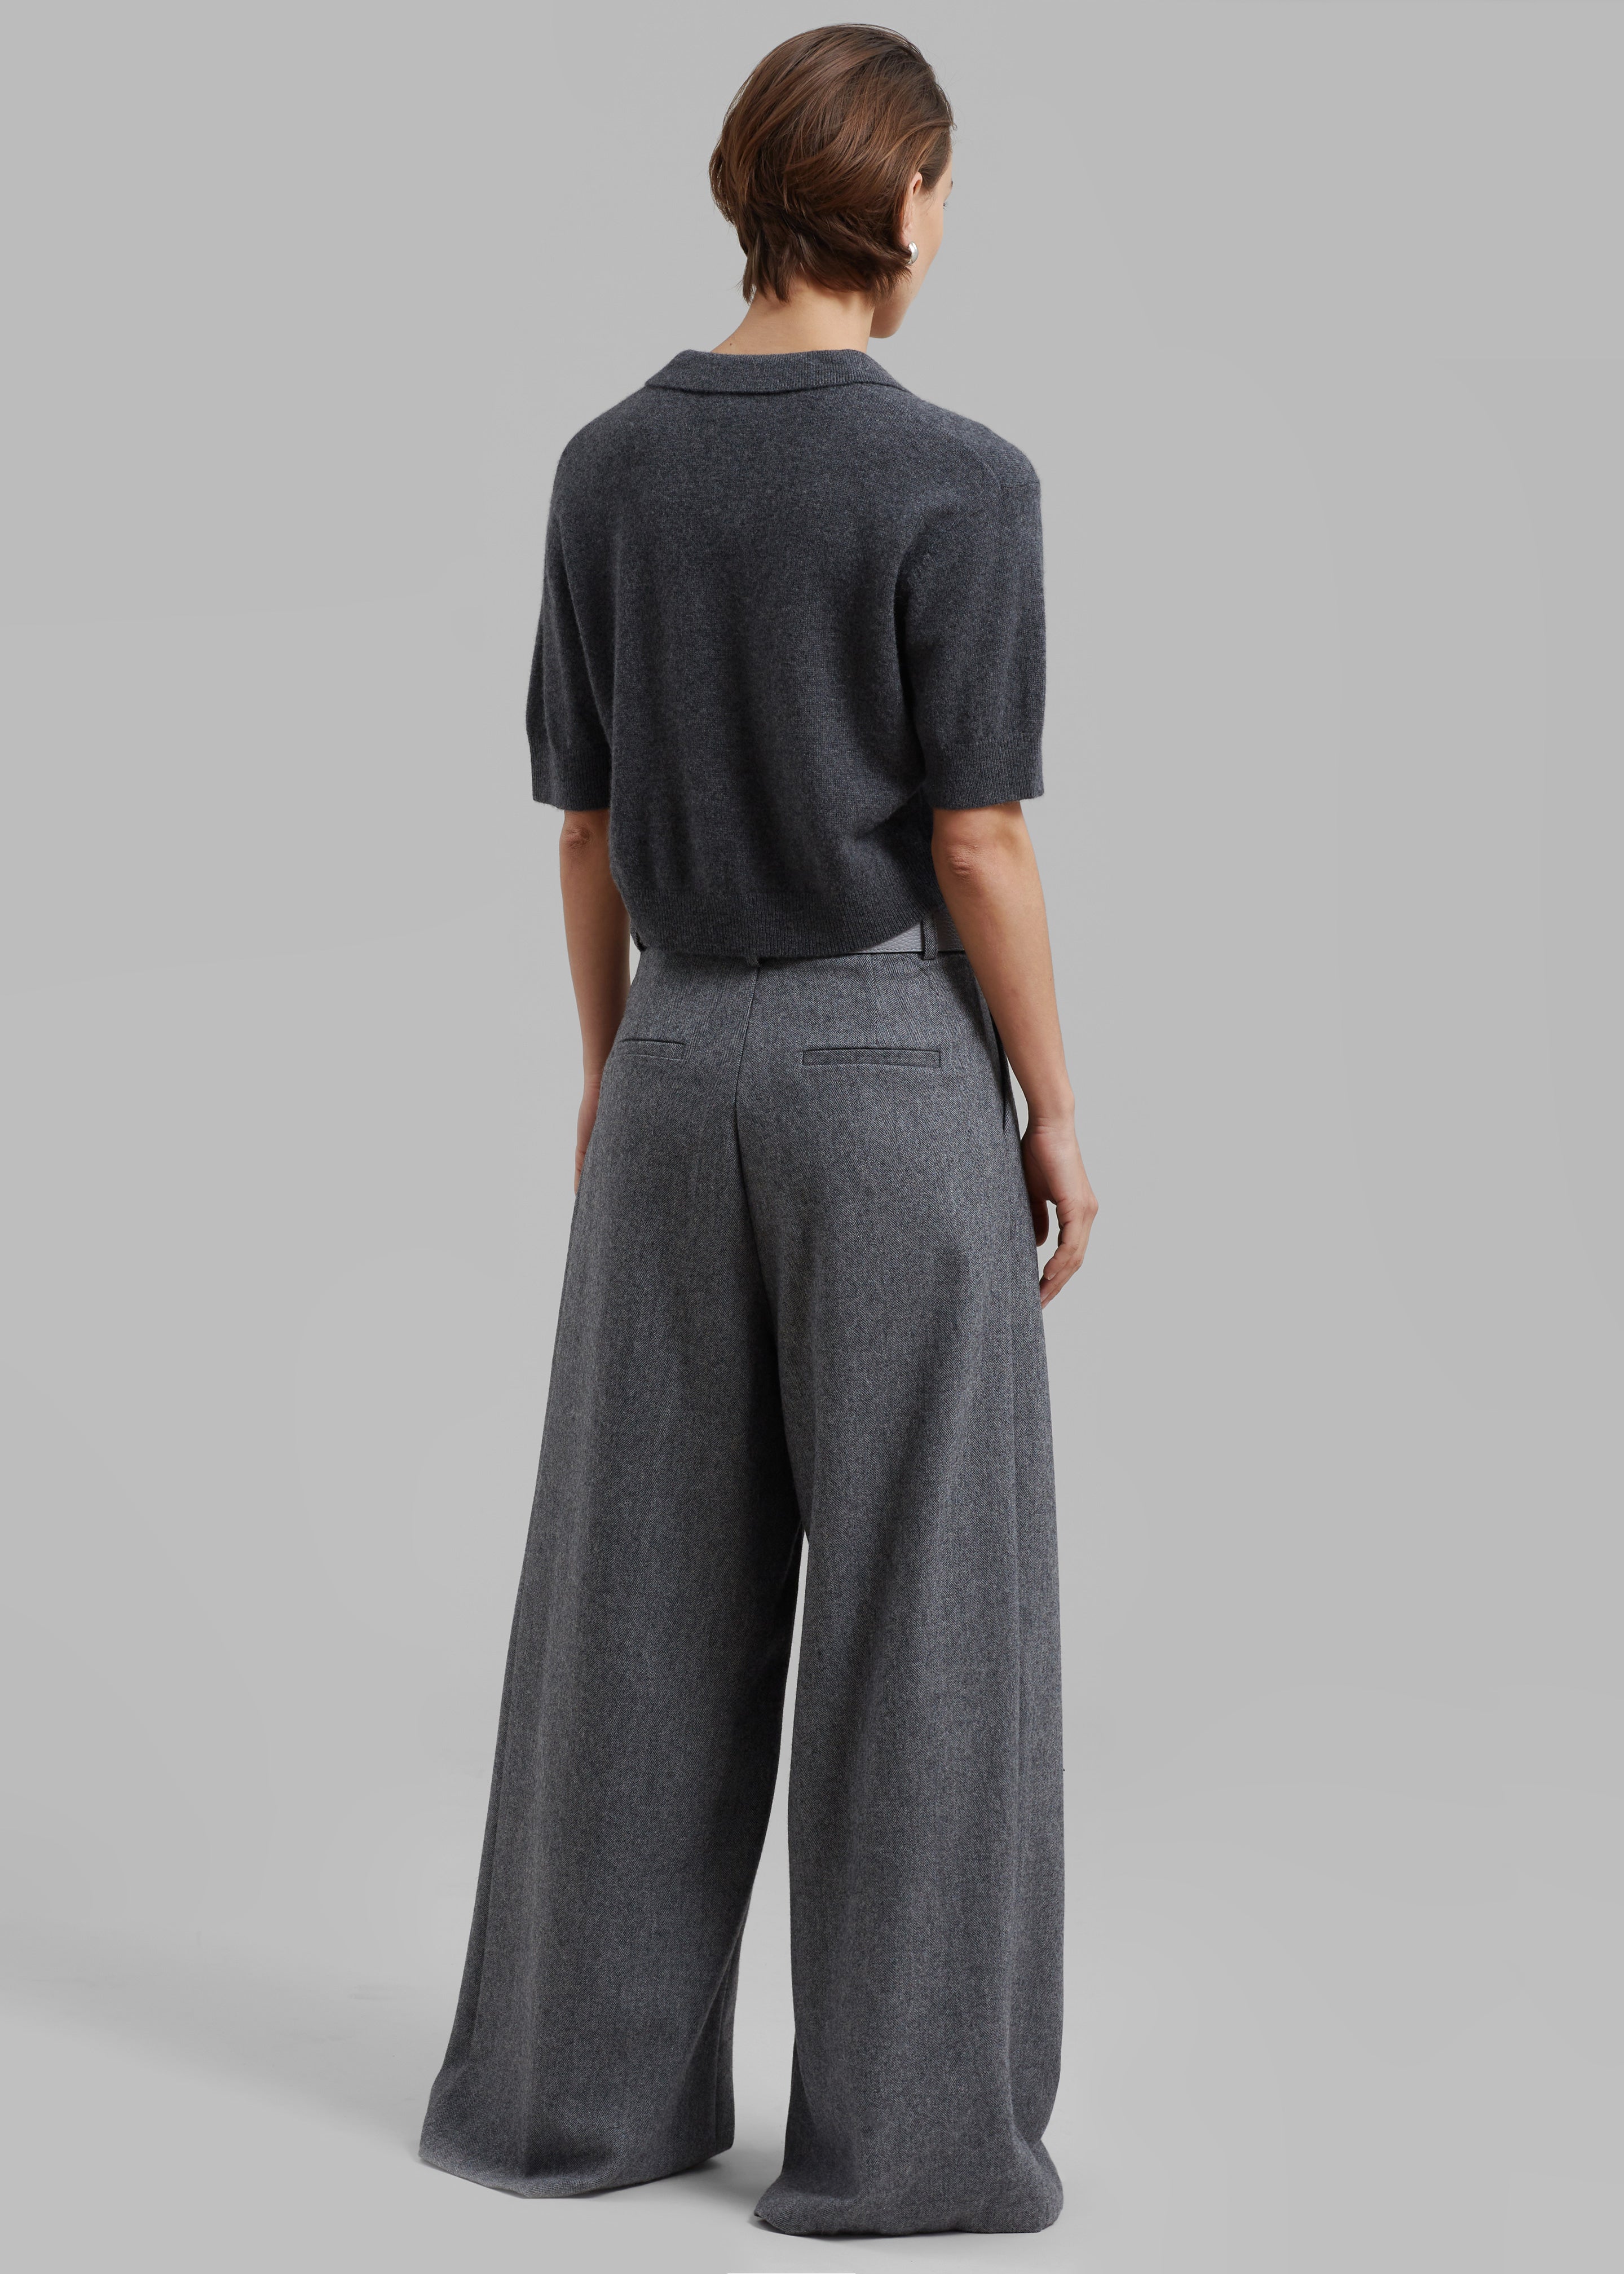 The Garment Piemonte Cropped Sweater - Grey Melange - 6